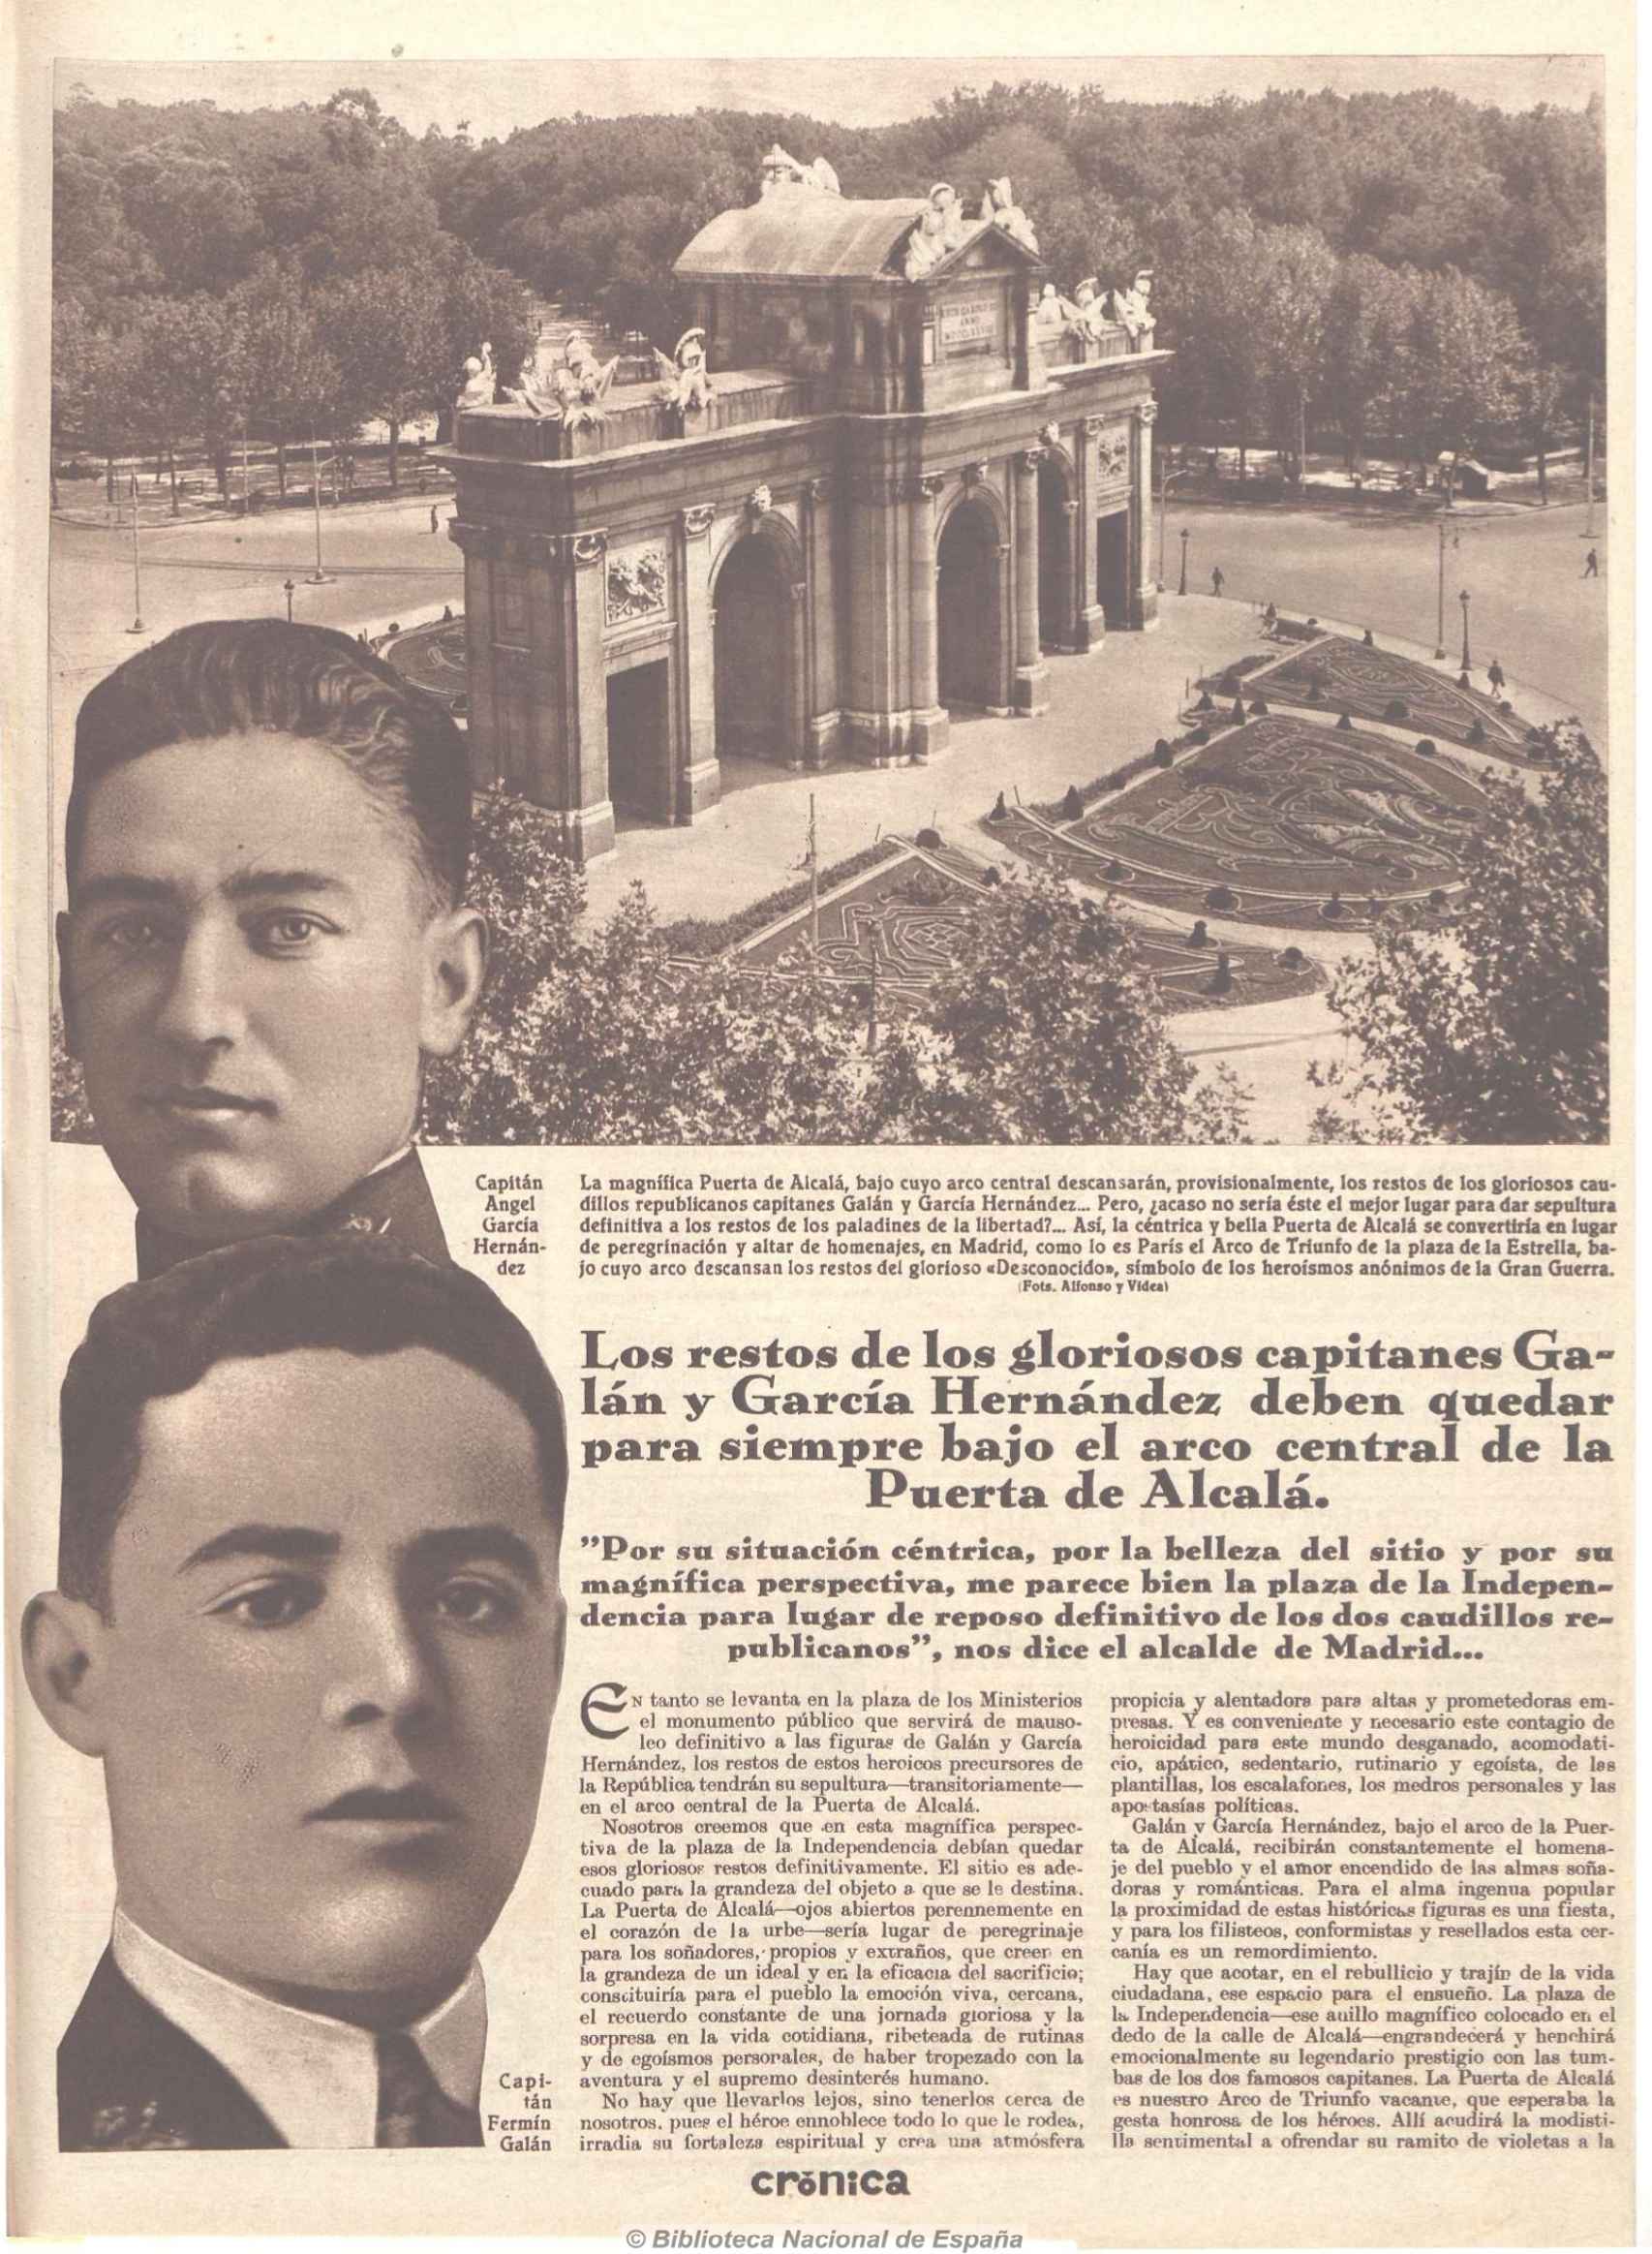 Noticia sobre la inhumación en la Puerta Alcalá en 'Crónica'.